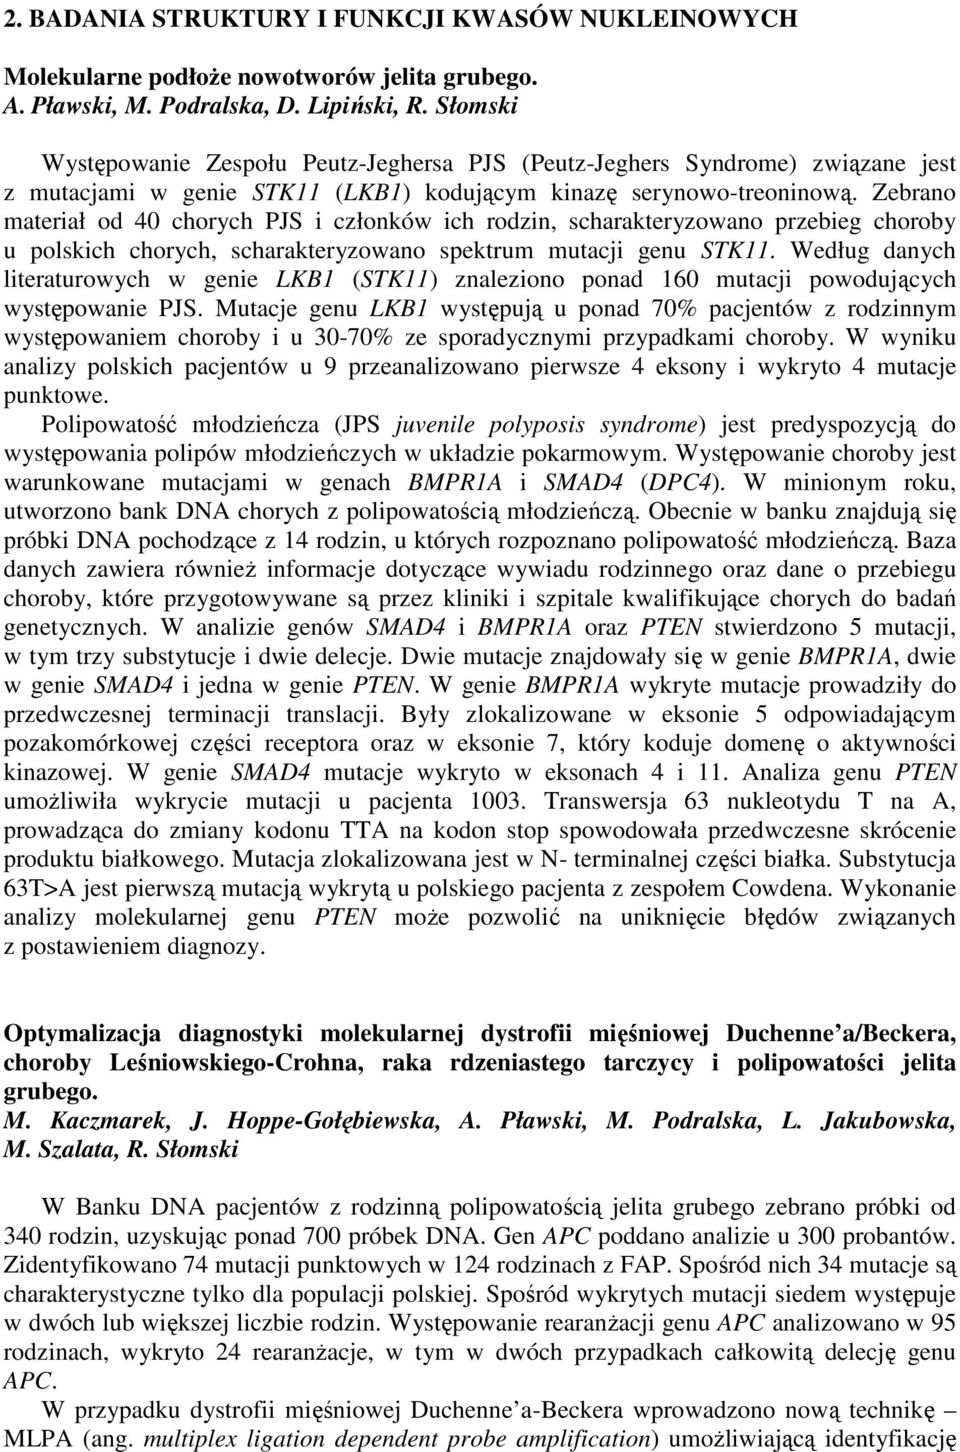 Zebrano materiał od 40 chorych PJS i członków ich rodzin, scharakteryzowano przebieg choroby u polskich chorych, scharakteryzowano spektrum mutacji genu STK11.